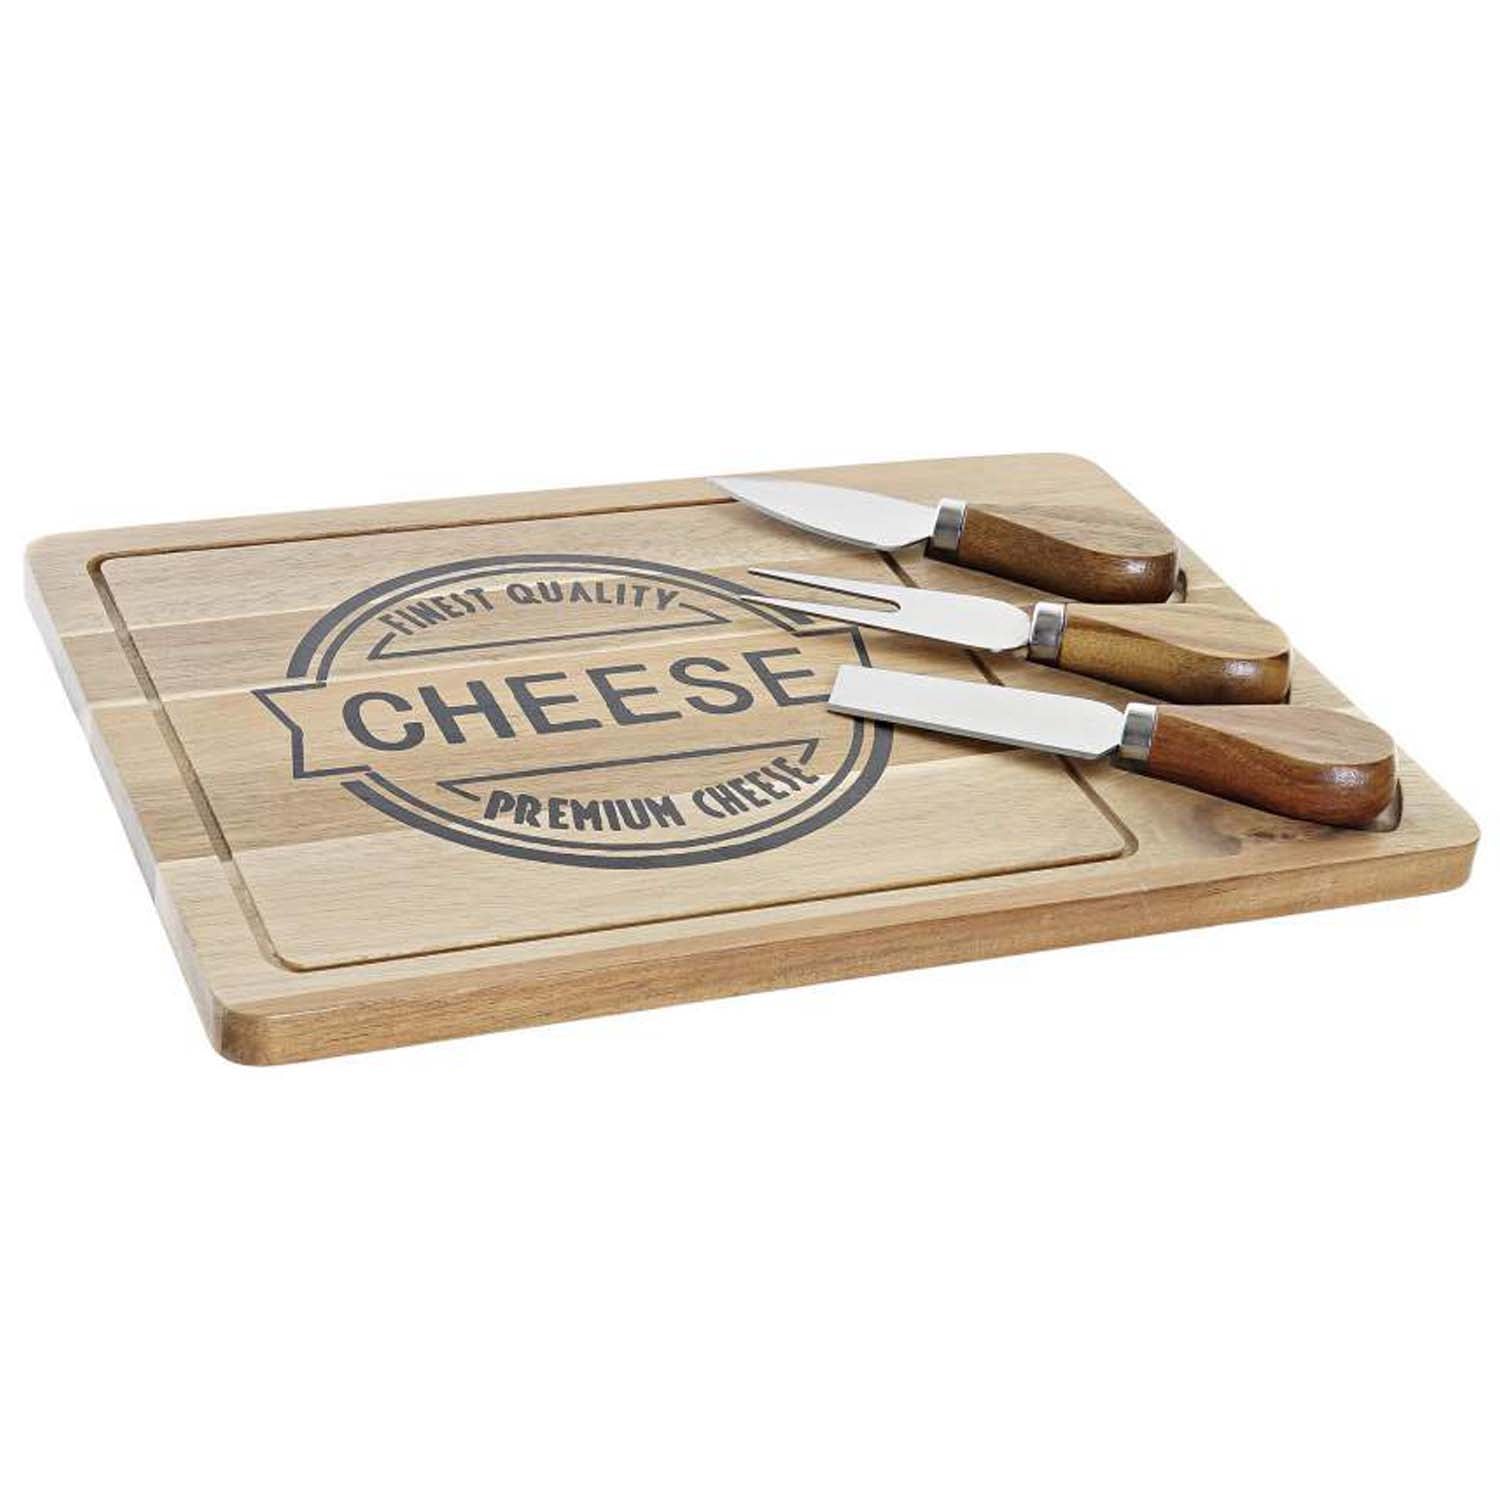 Cheese cutting board
